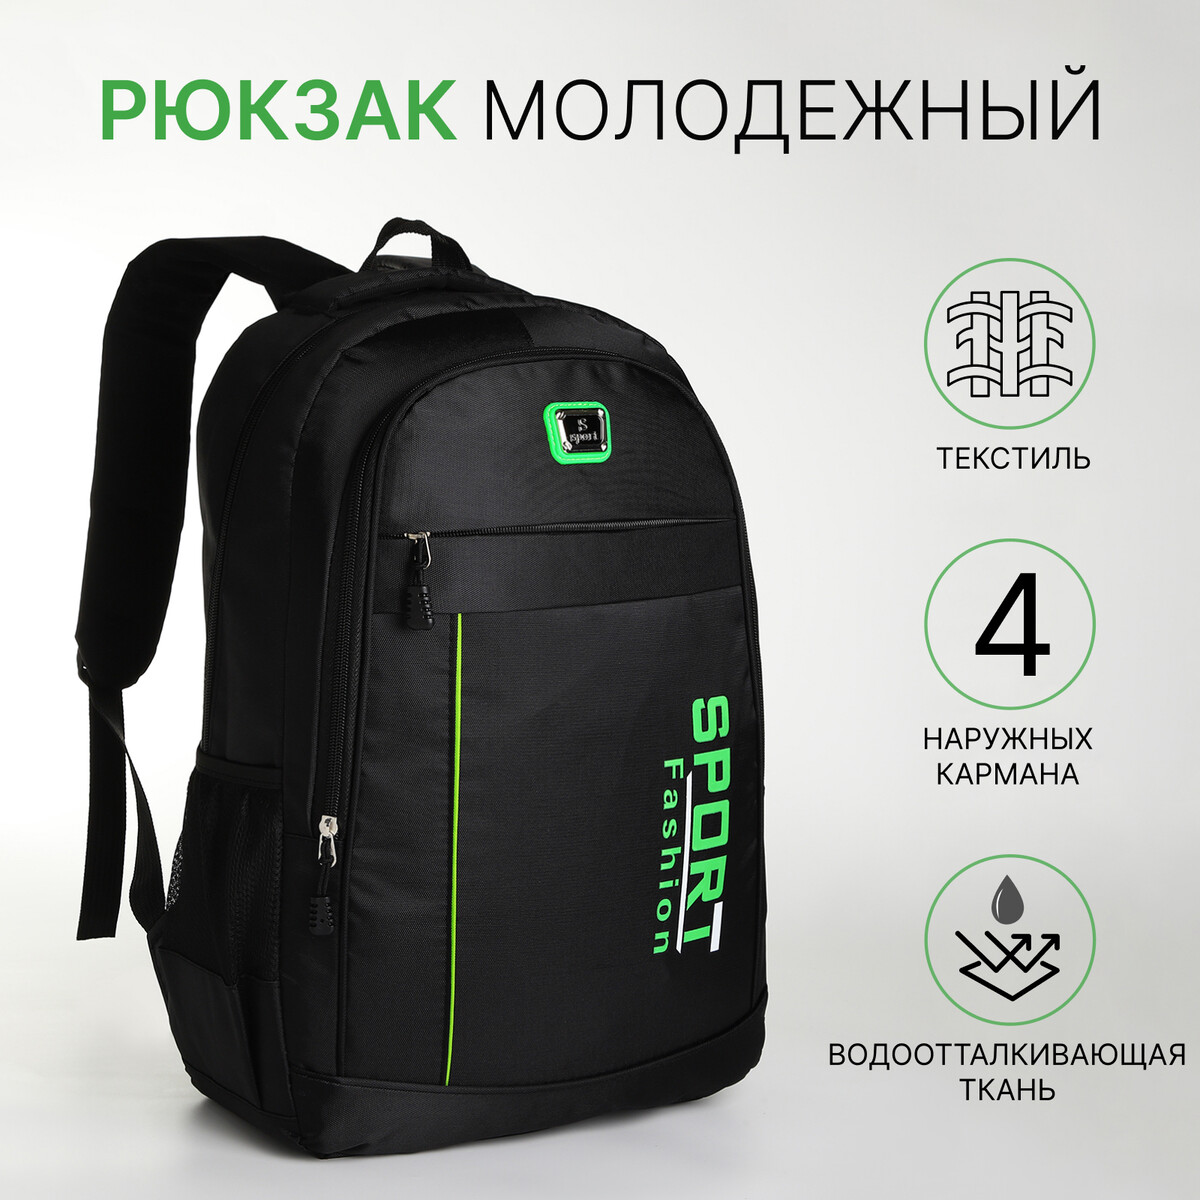 Рюкзак молодежный на молнии, 4 кармана, цвет черный/зеленый рюкзак молодежный из текстиля на молнии 4 кармана зеленый